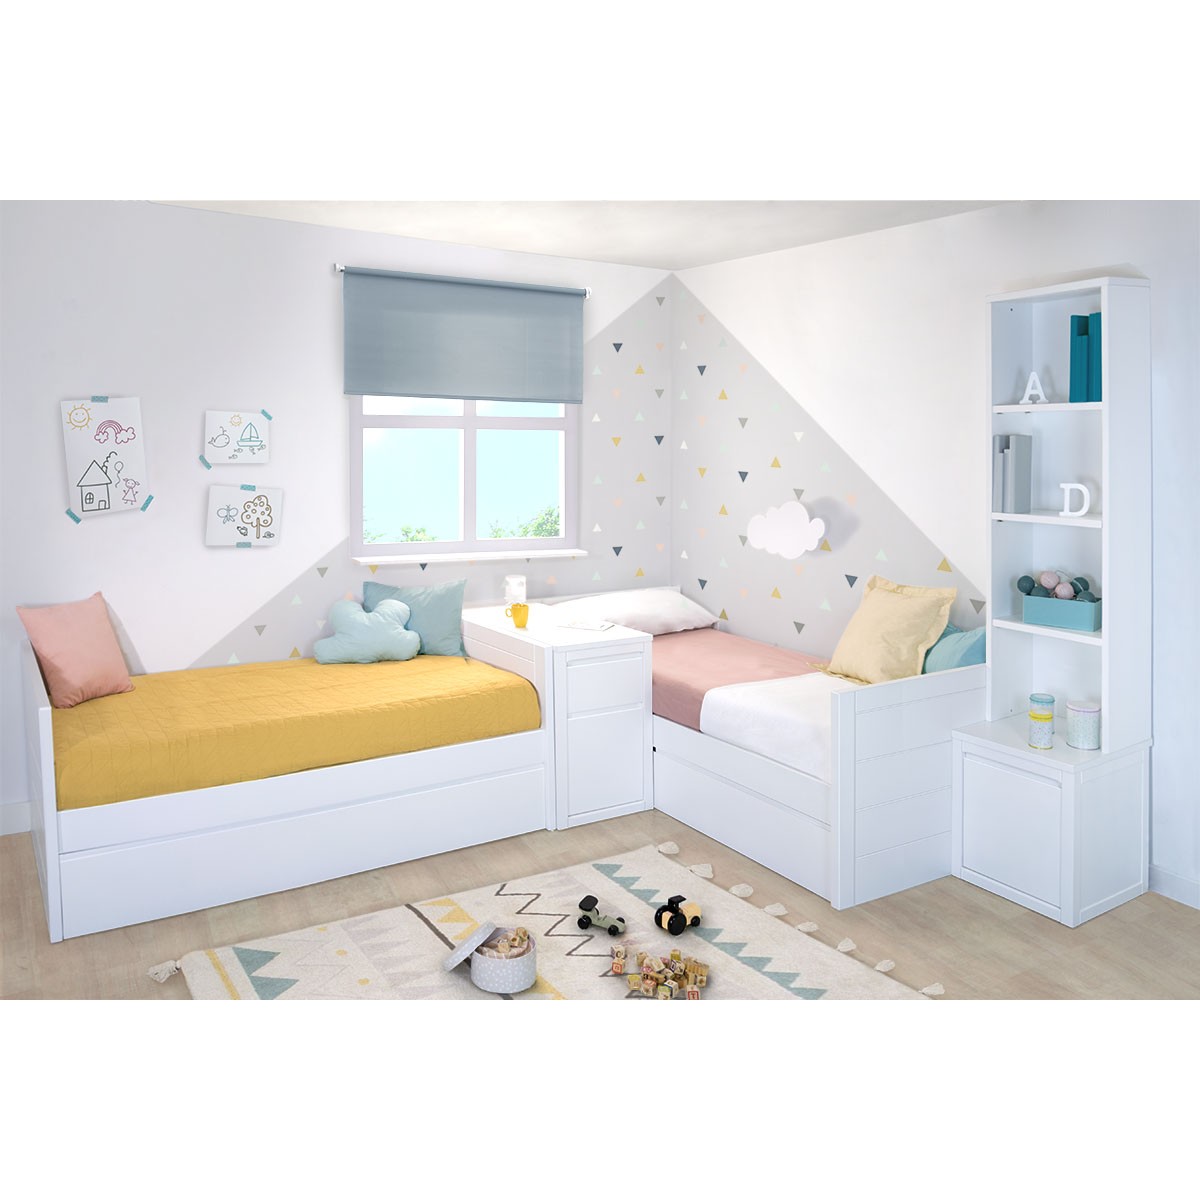 Camas nido infantiles para dormitorios compartidos •